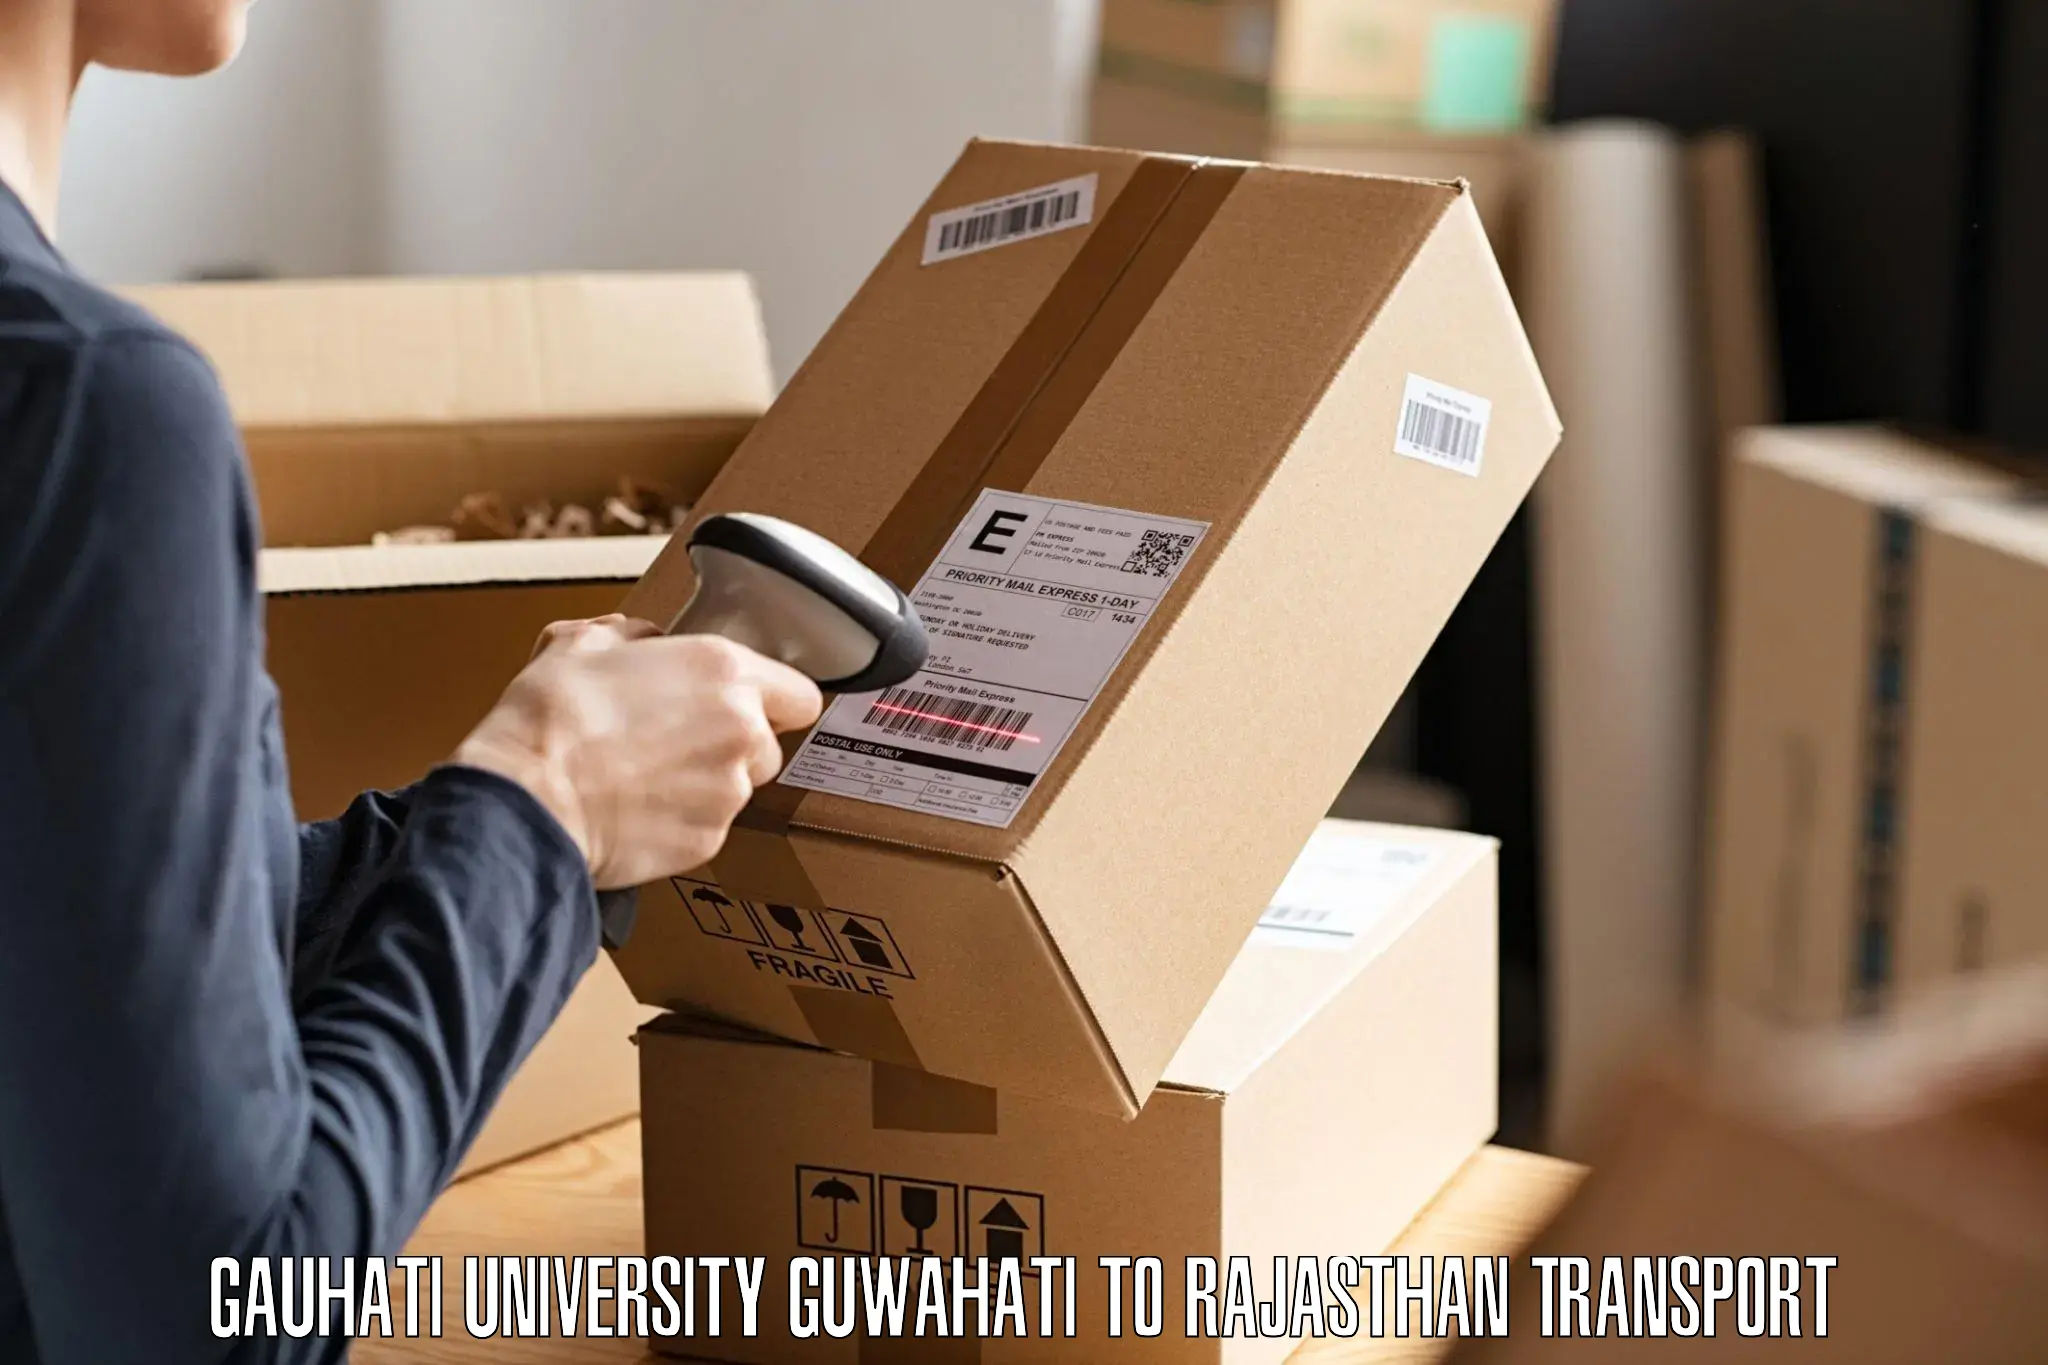 Luggage transport services Gauhati University Guwahati to Jhalawar